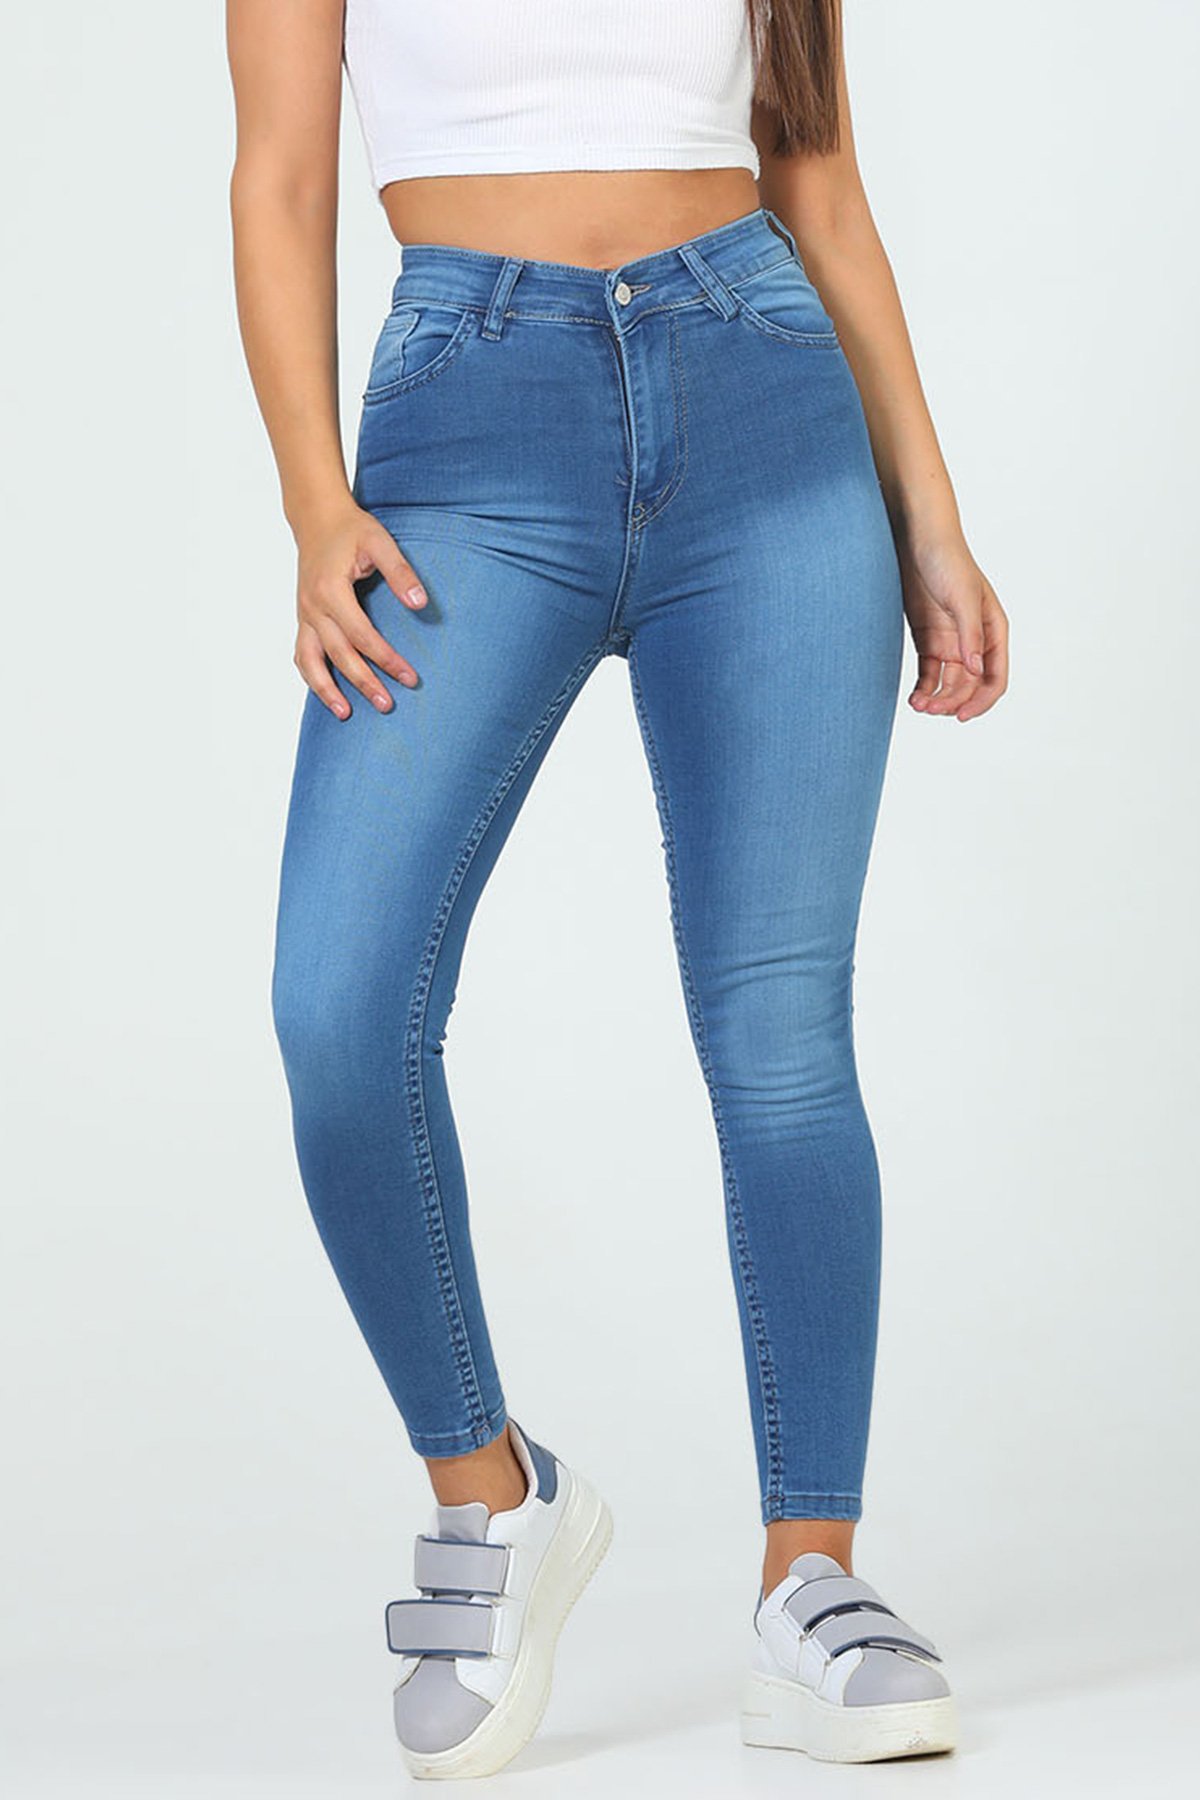 Kadın Yüksek Bel Likralı Jeans Pantolon Mavi 504052 - tozlu.com